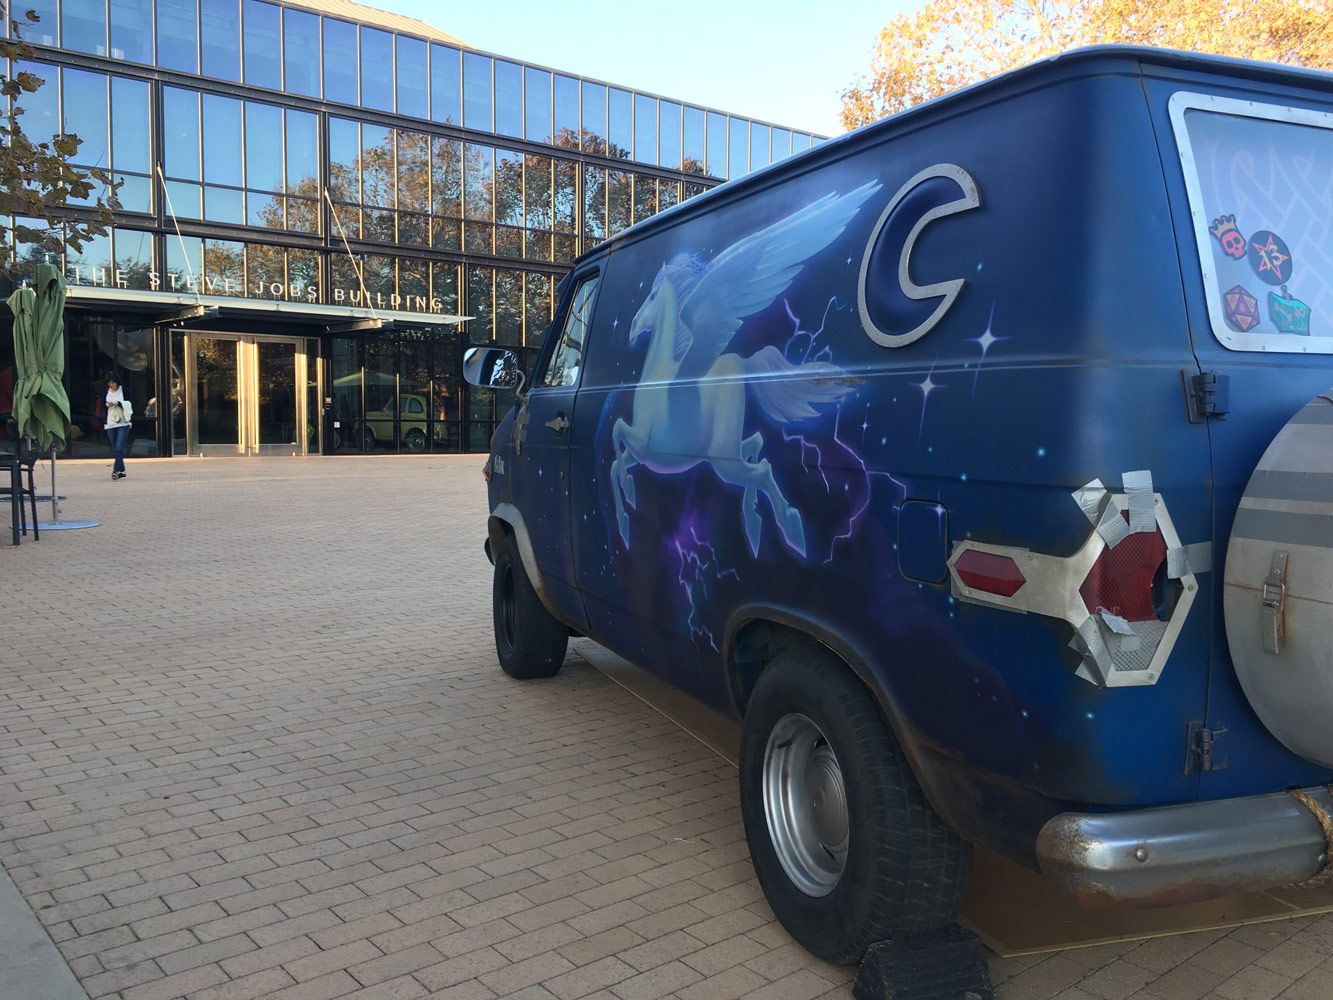 Onward van in front of Steve Jobs Building at Pixar